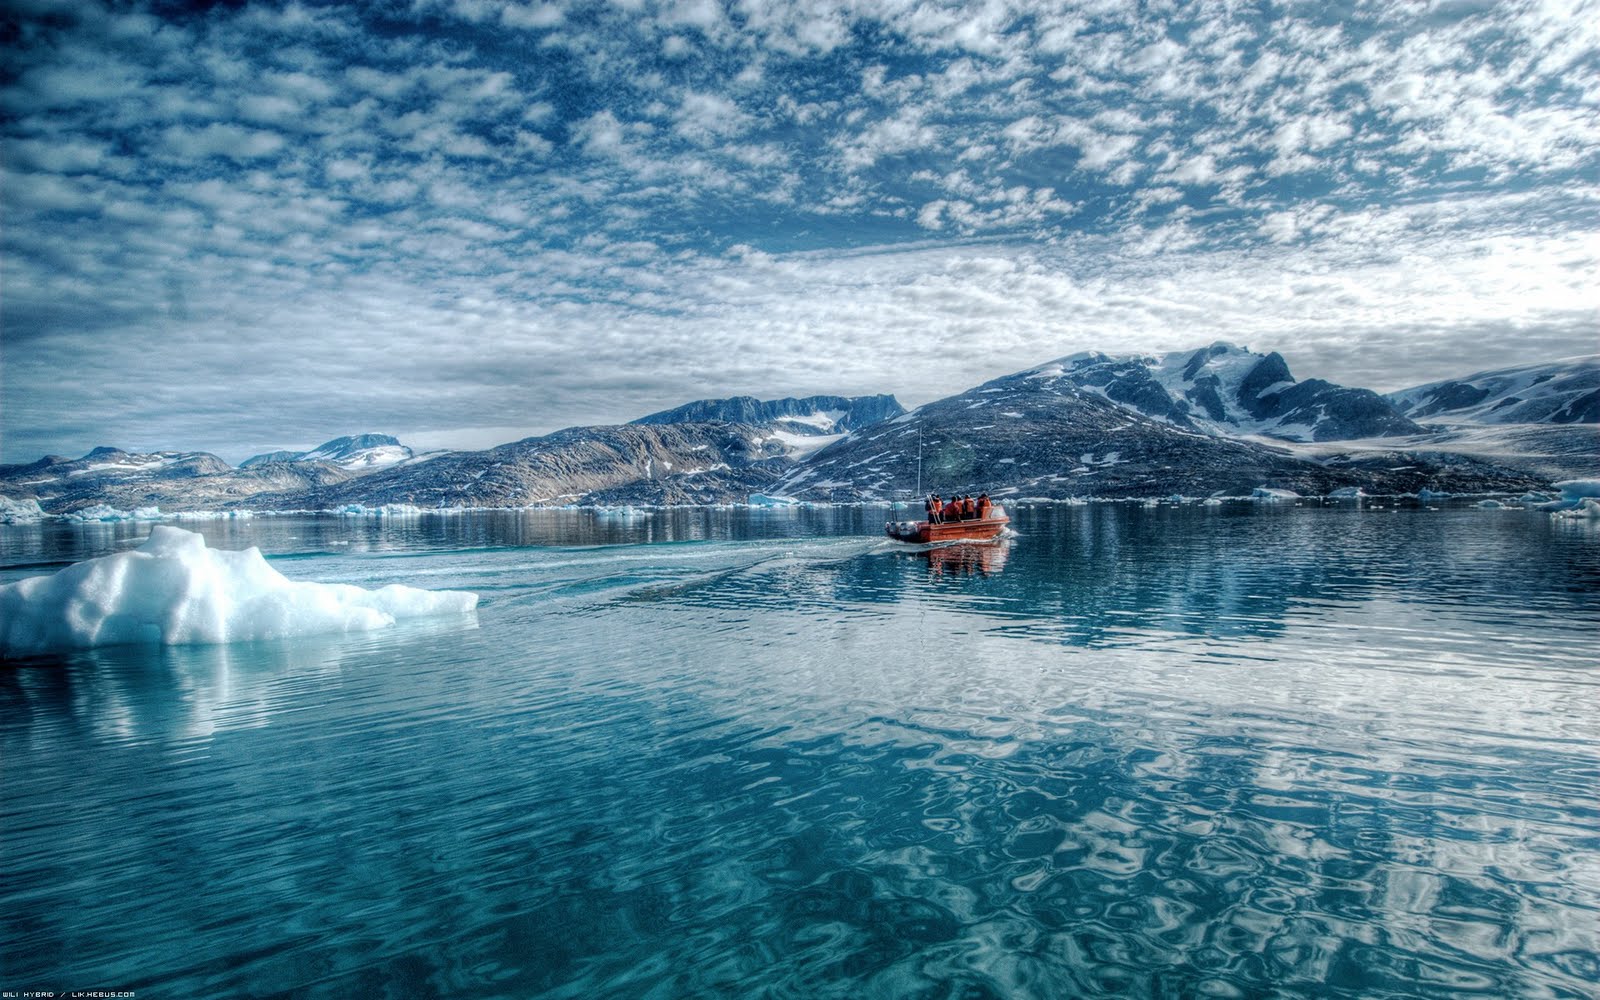  Ártico sufre segundo mayor deshielo desde 2007: NASA